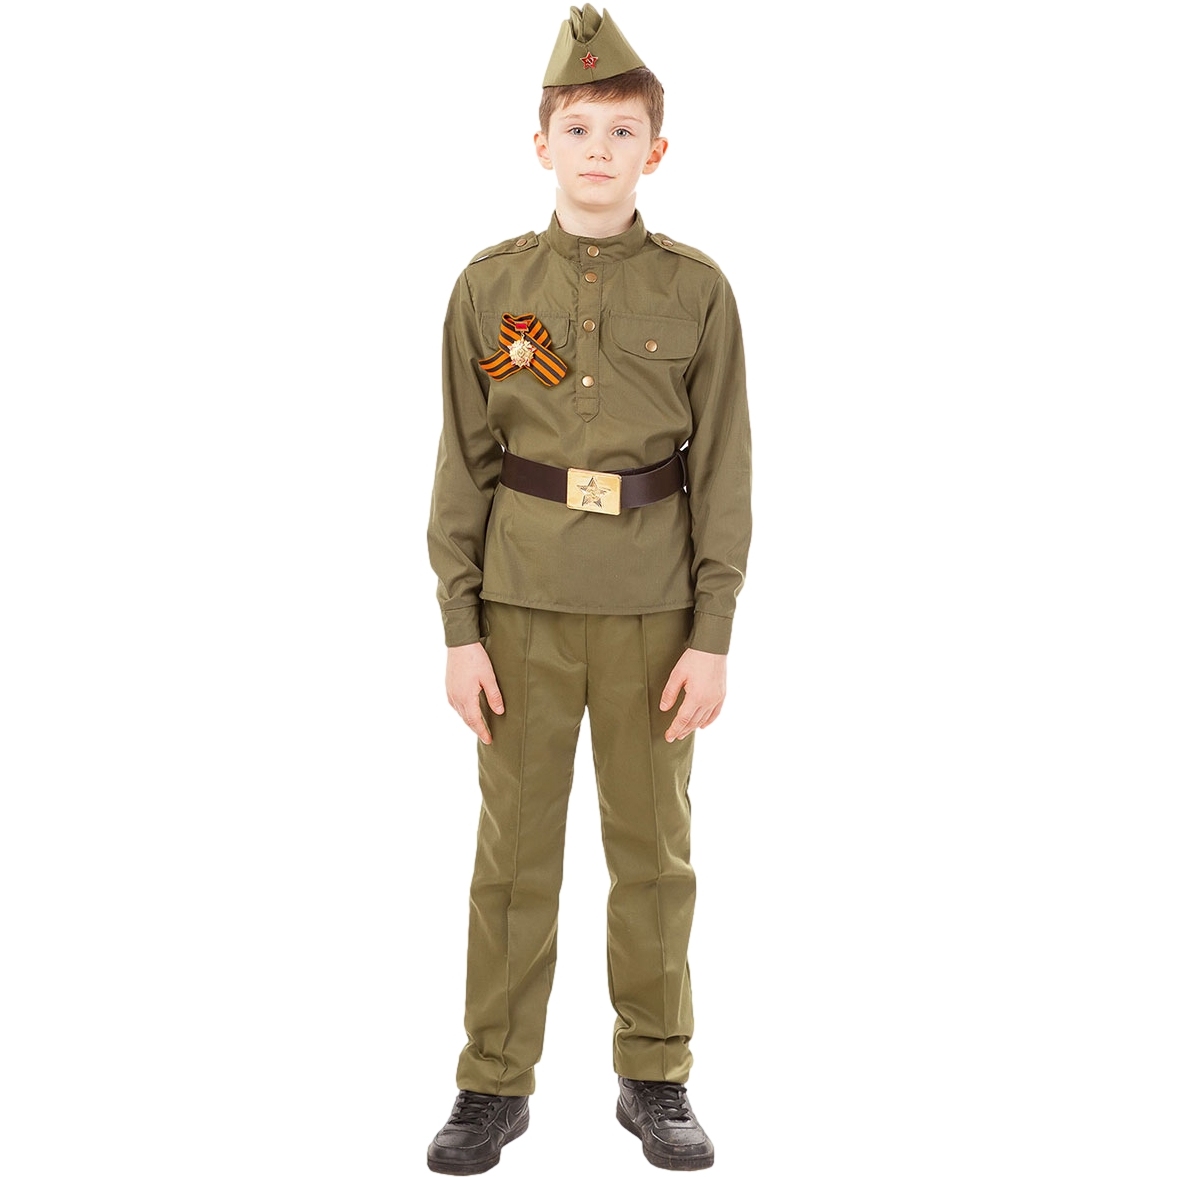 Карнавальный костюм "солдат" (гимнастерка, брюки, пилотка, ремень,георгиевская лента) размер 104-52